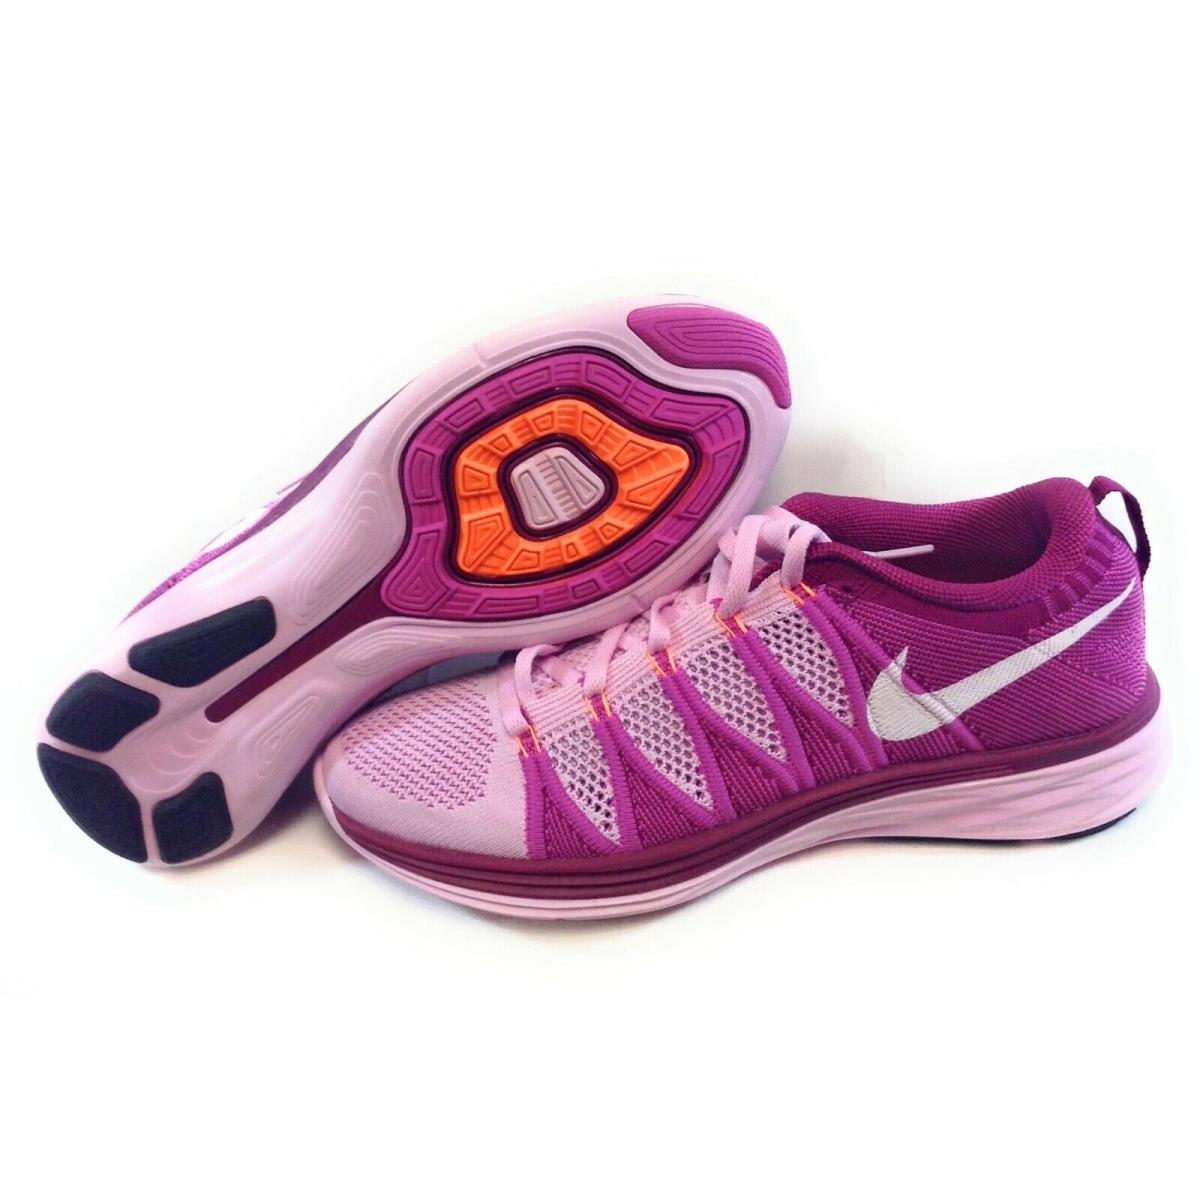 Womens Nike Flyknit Lunar2 620658 615 Pink Purple 2013 Deadstock Sneakers Shoes